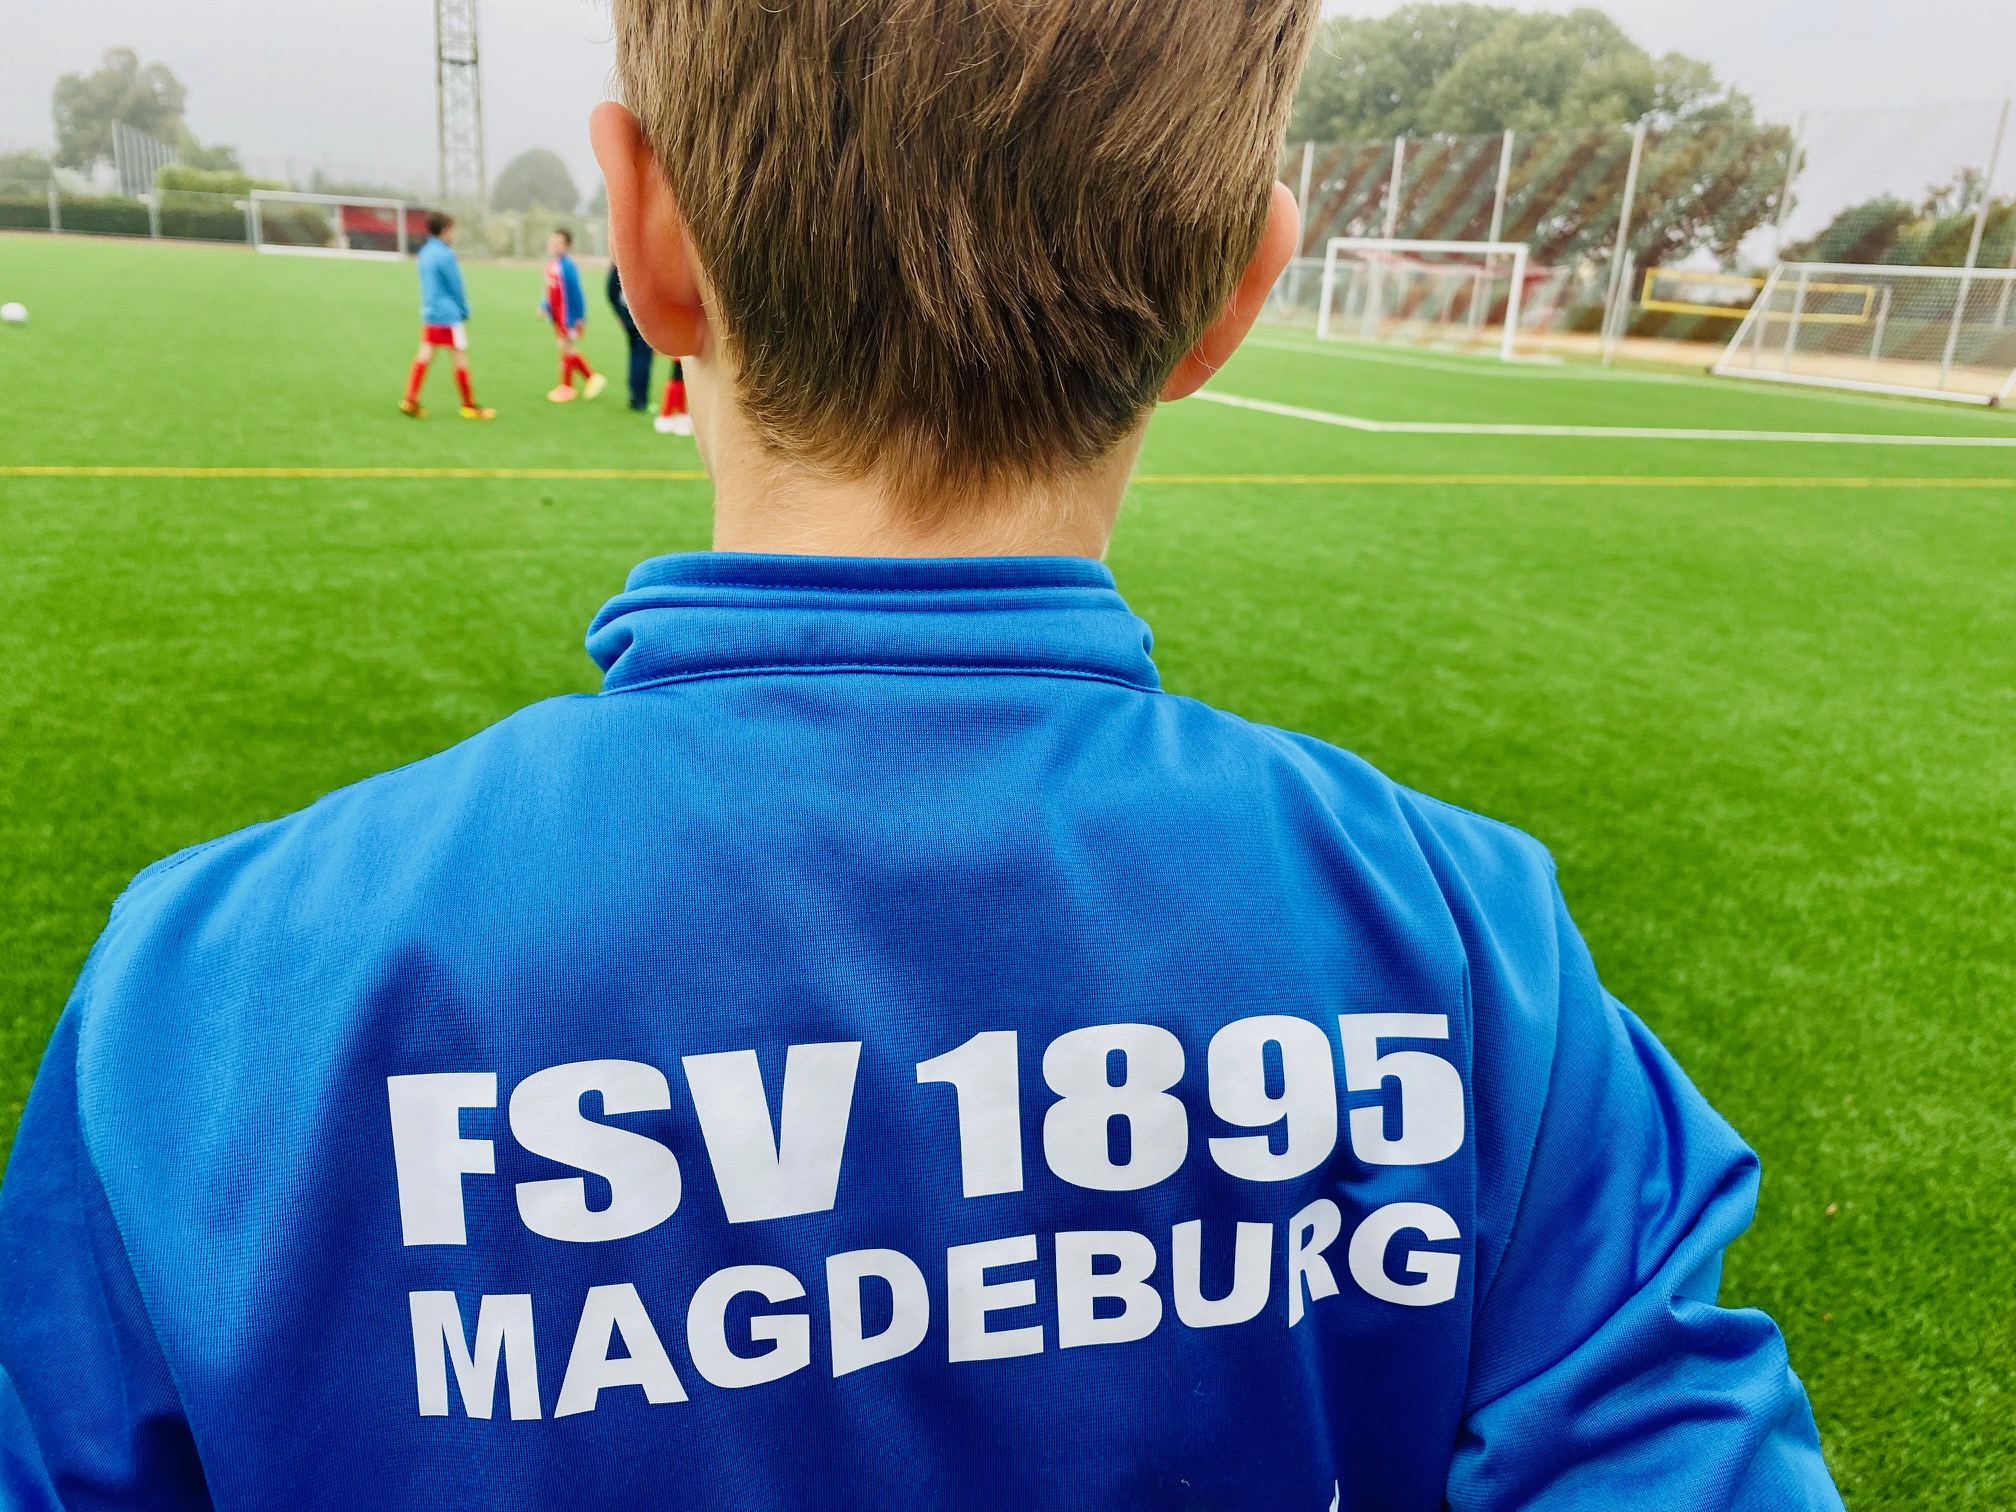 Sportsponsoring: Flavura Kaffee und Vending istSponsor der Kinderfußballmannschaft des FSV 1895 Magdeburg